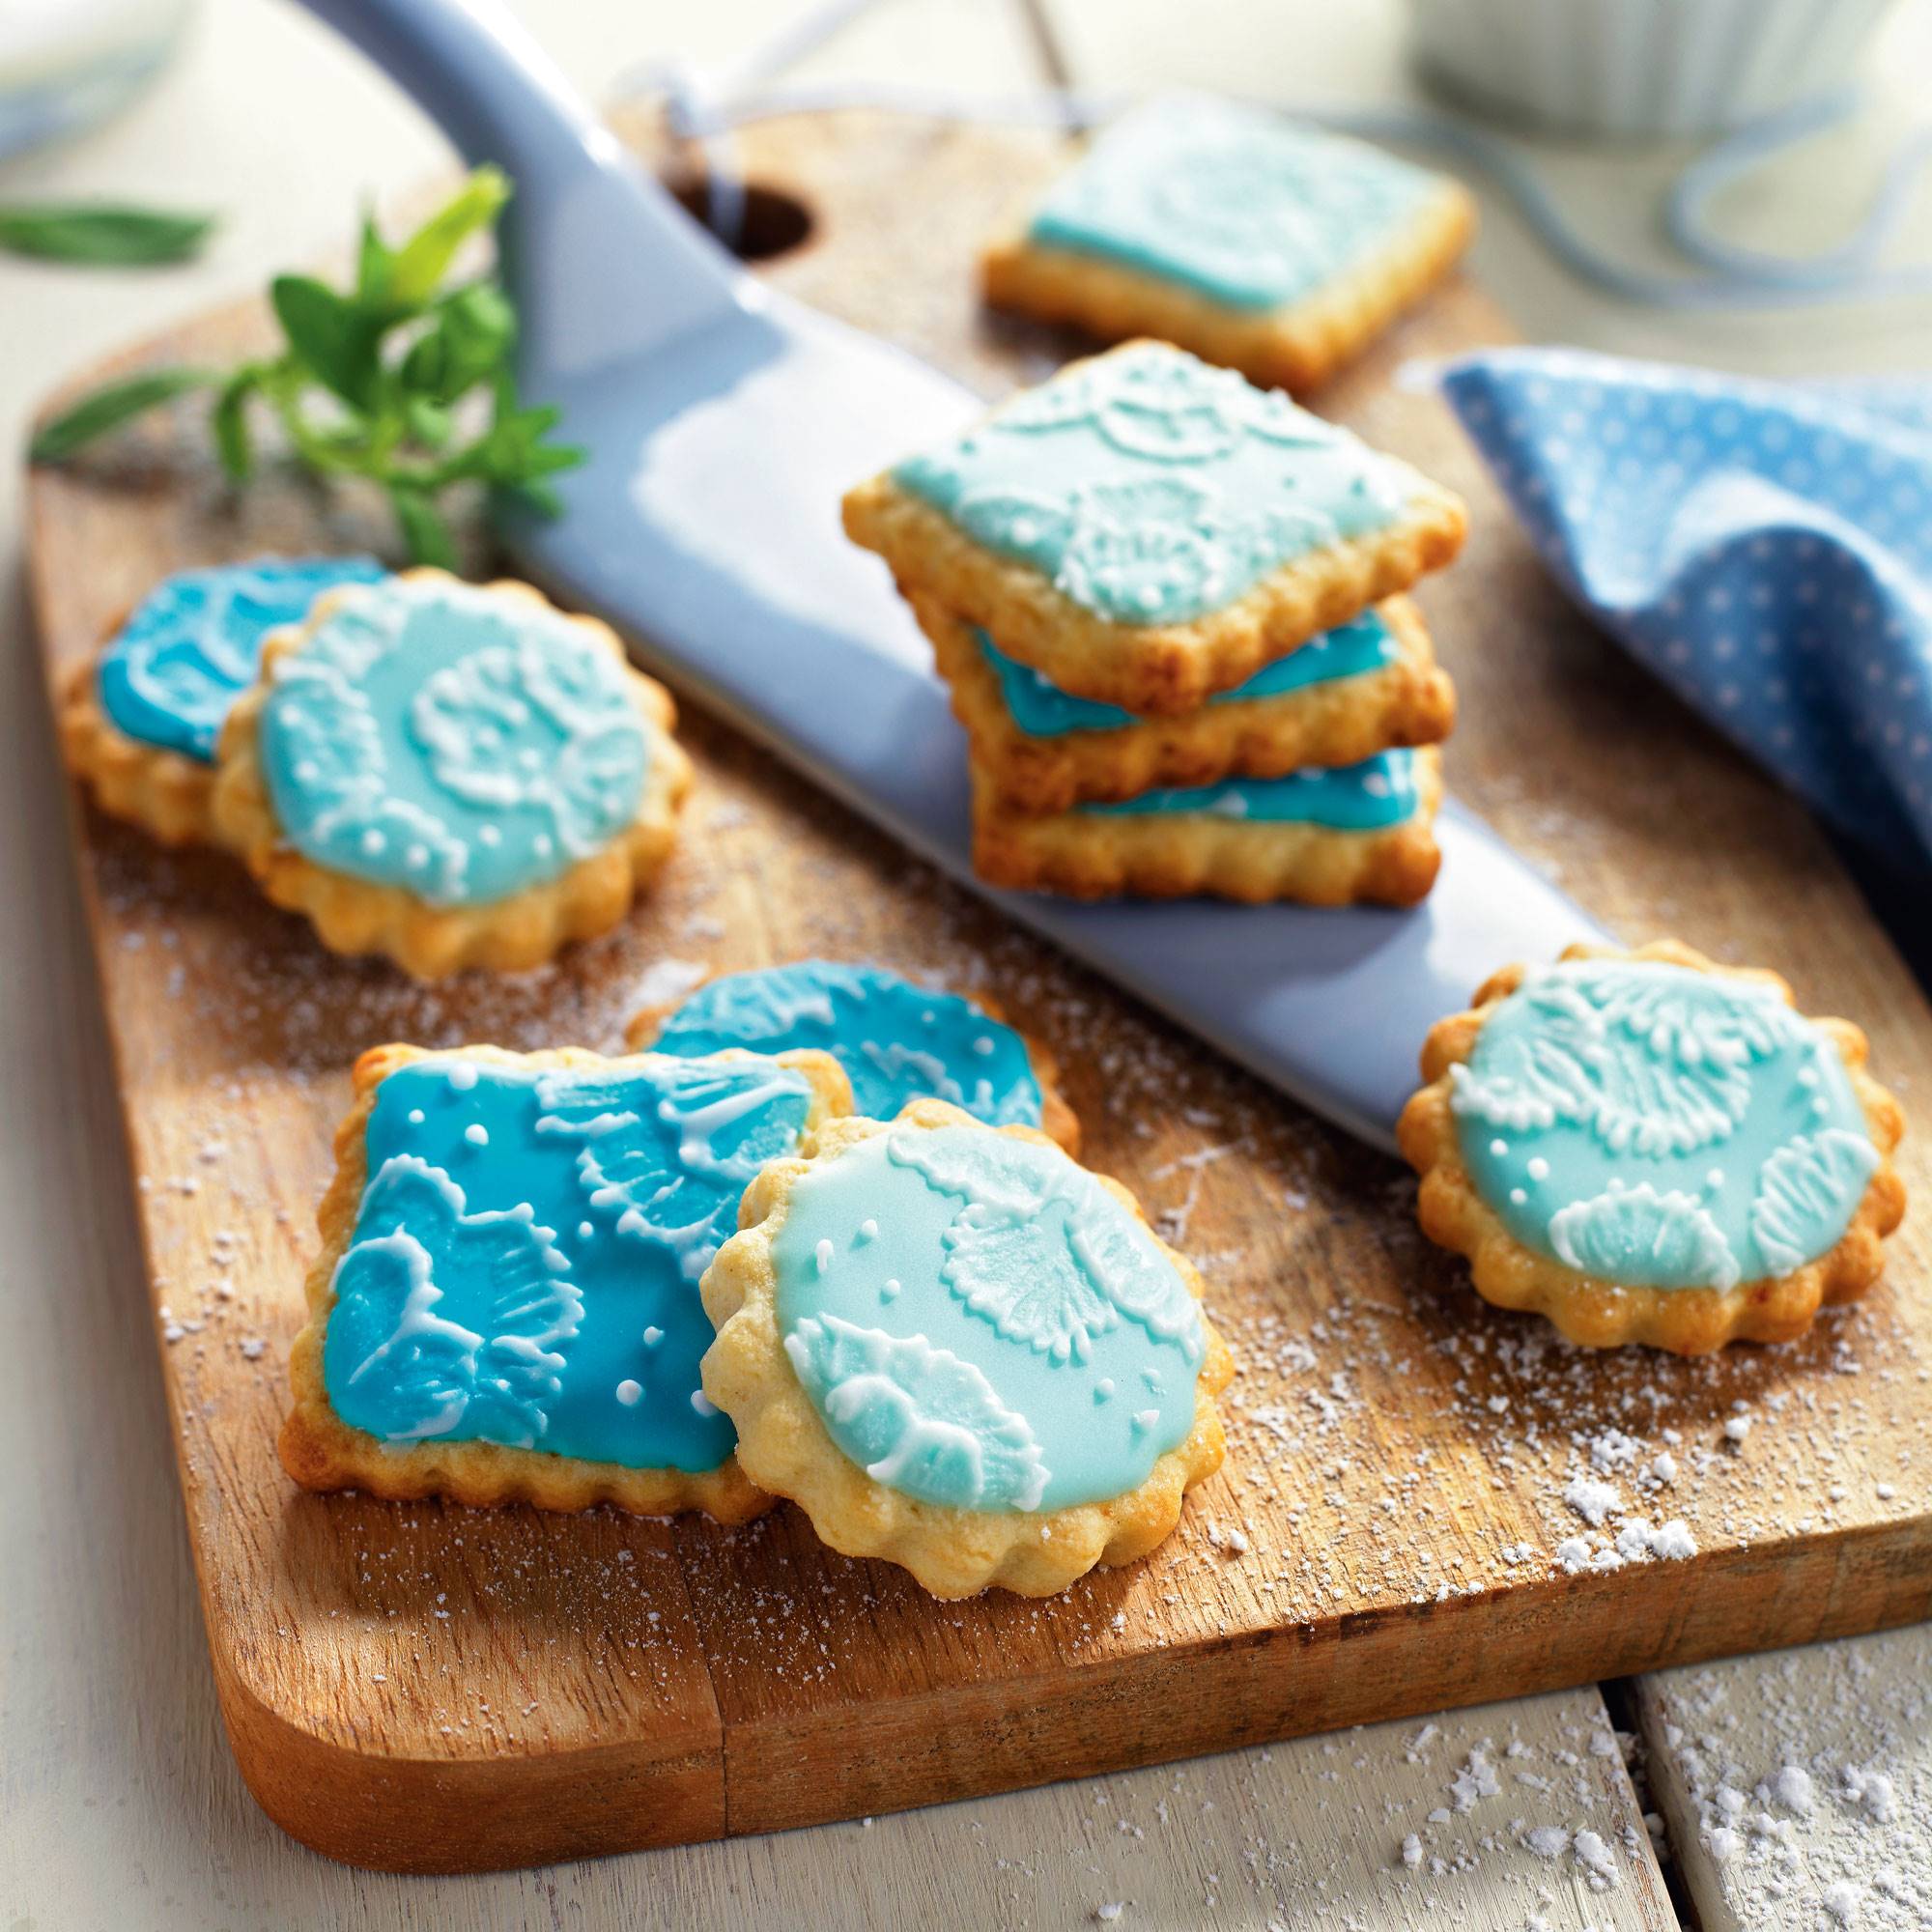 Galletas de Navidad: galletas decoradas con glasa azul.